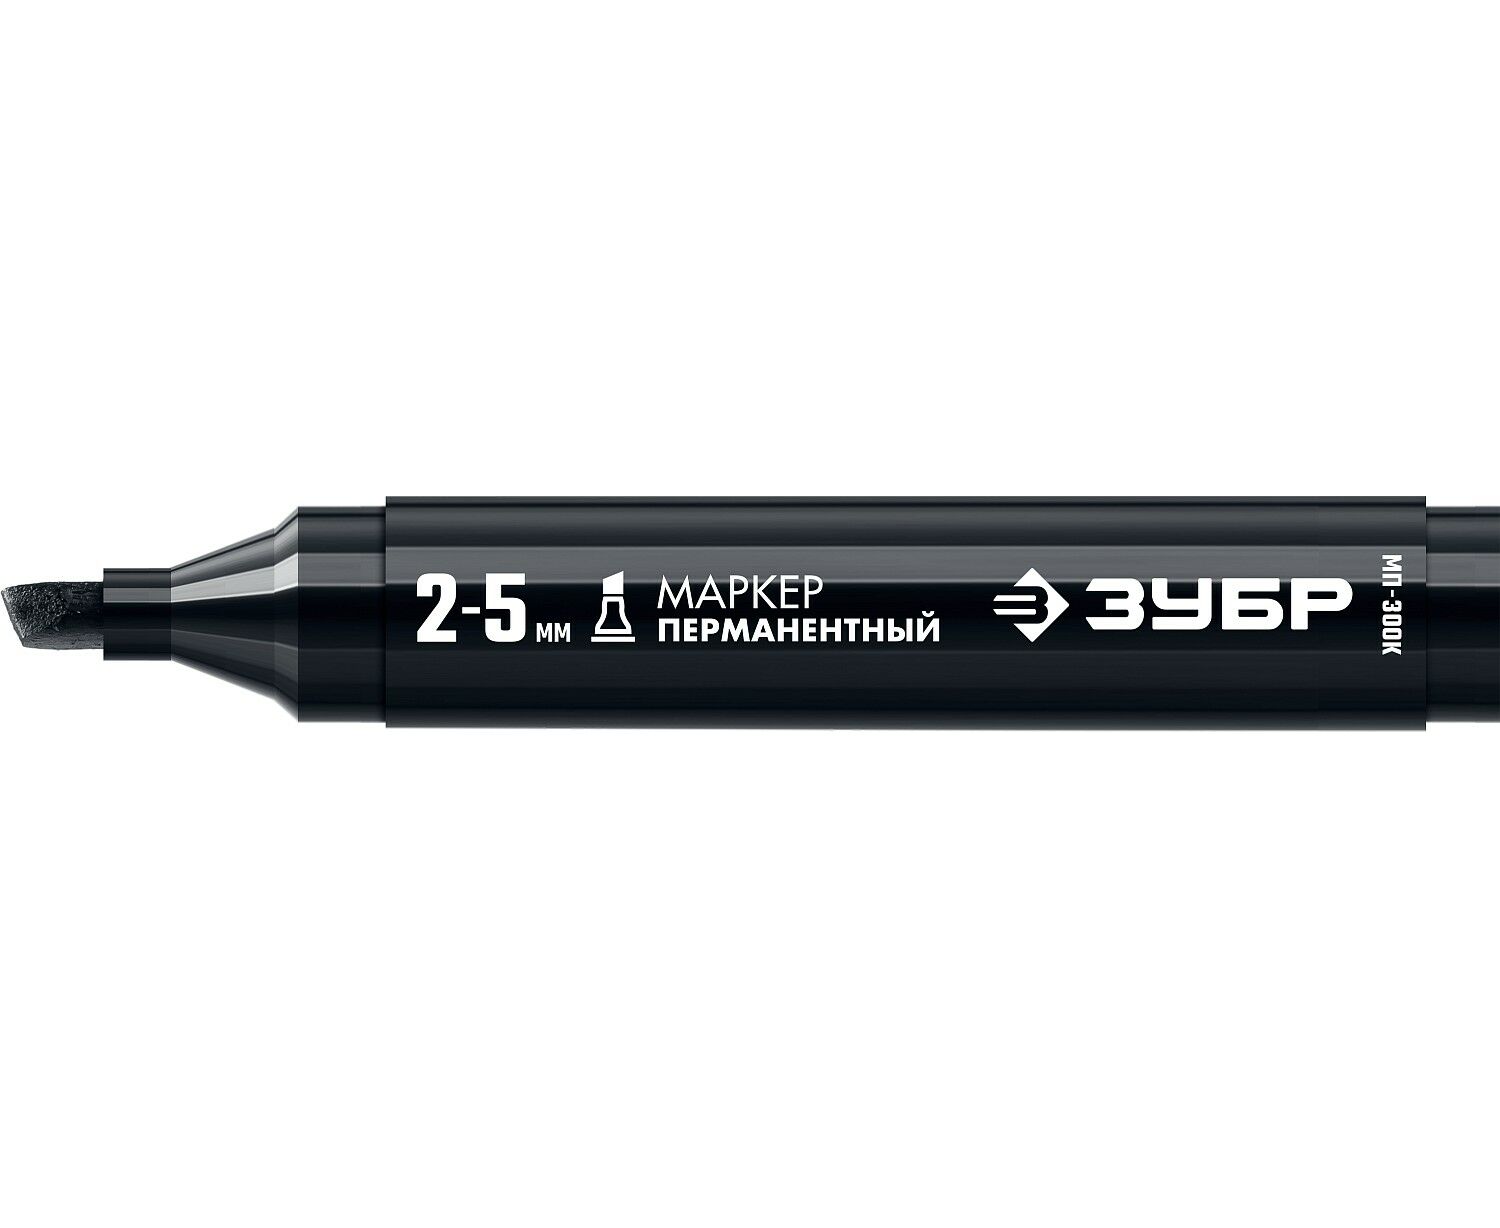 Маркер строительный ЗУБР МП-300К черный, 2-5 мм, клиновидный, перманентный маркер двухсторонний перманентный vertextools красный строительный 1 шт